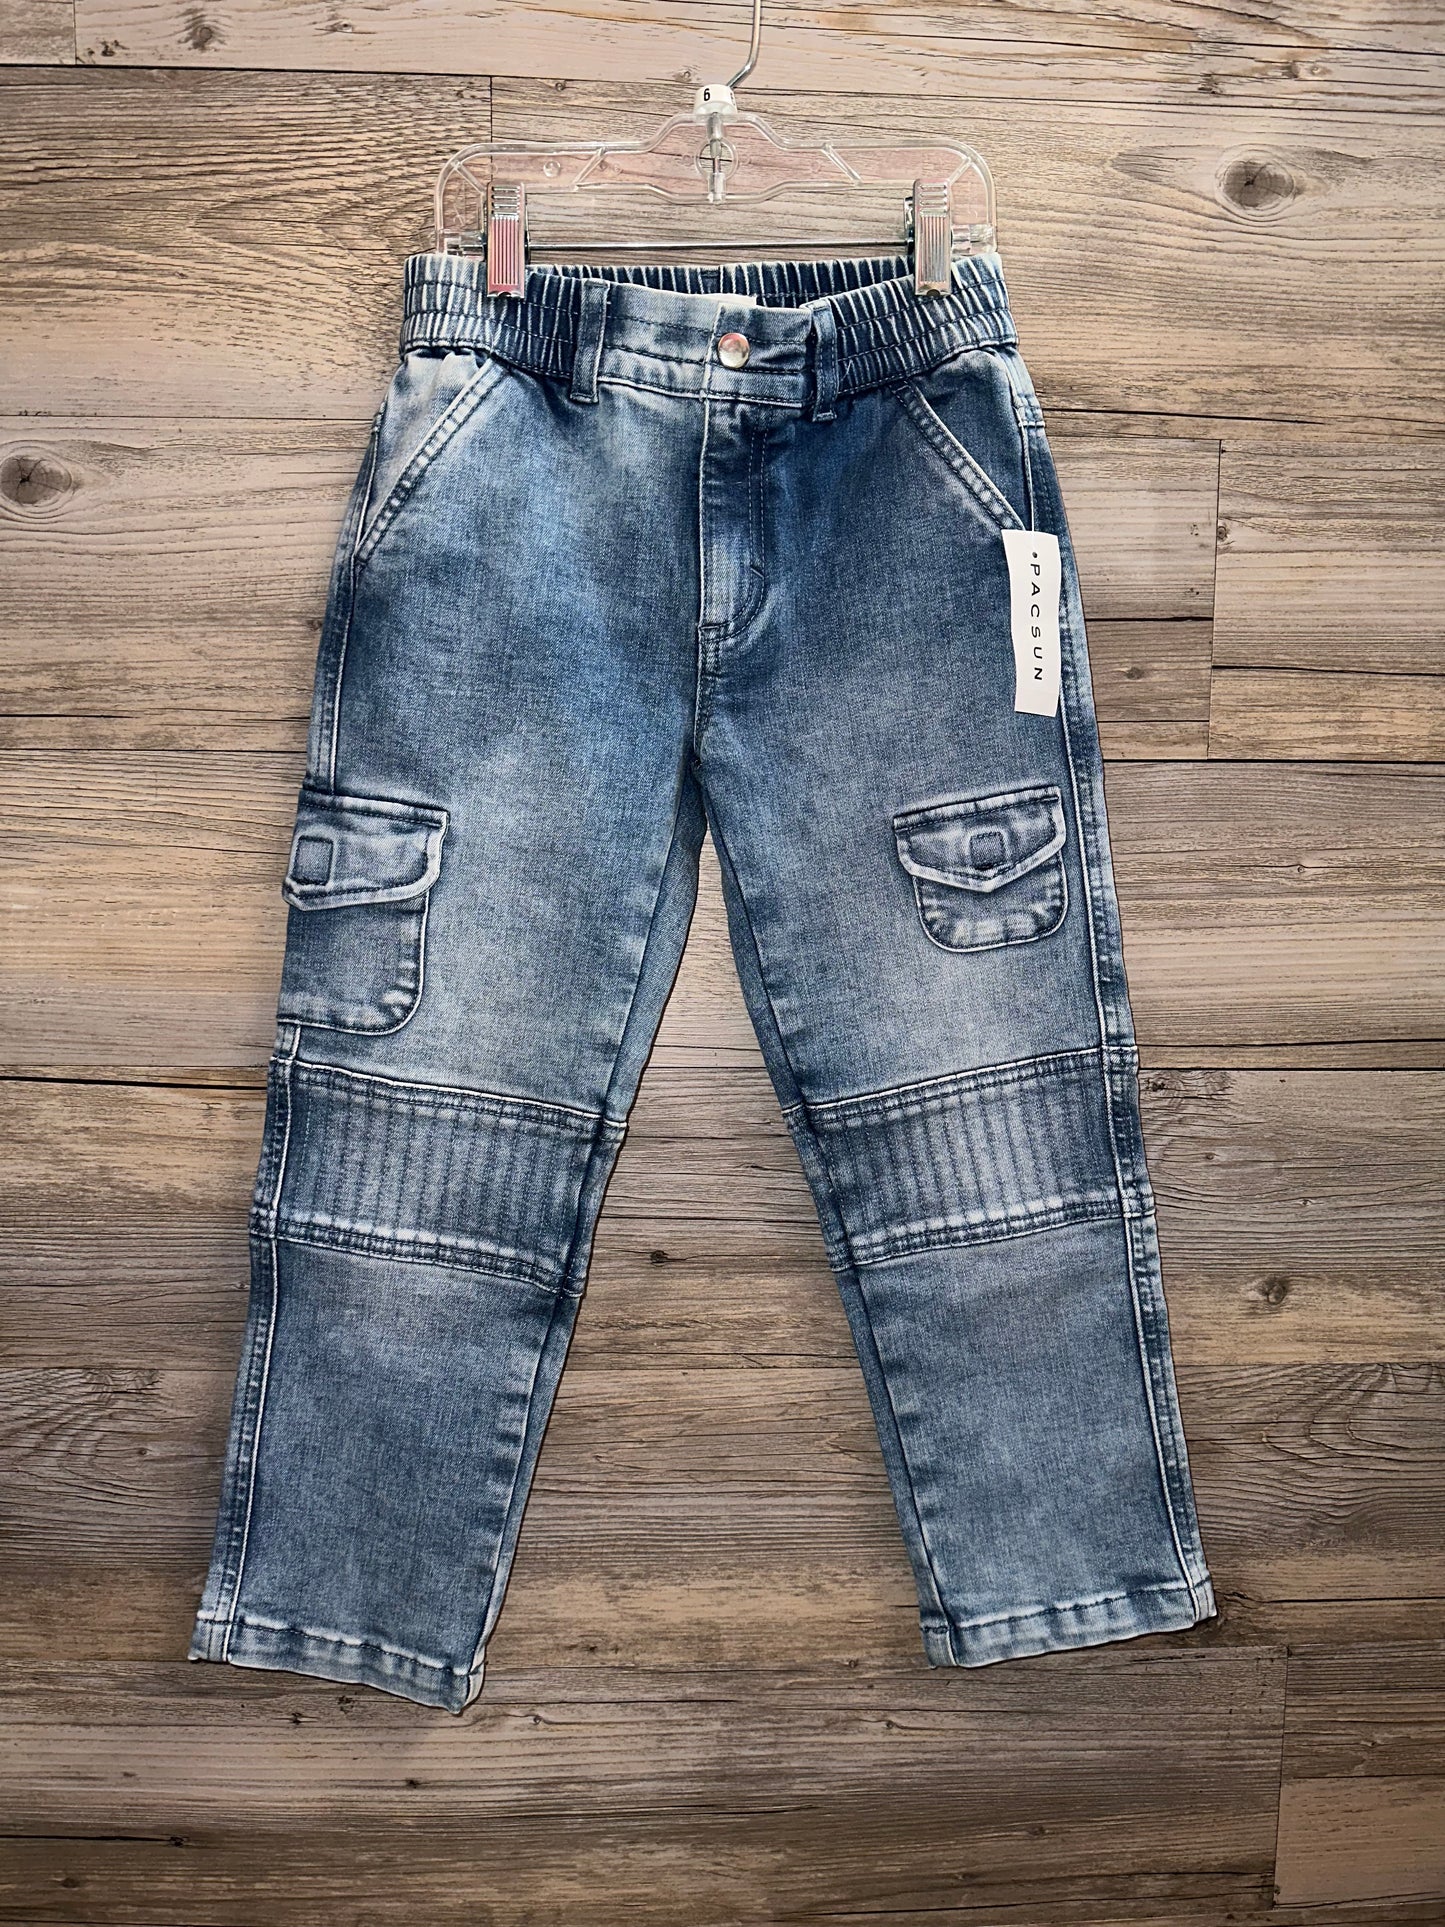 Pacsun Denim Jeans, Size 6